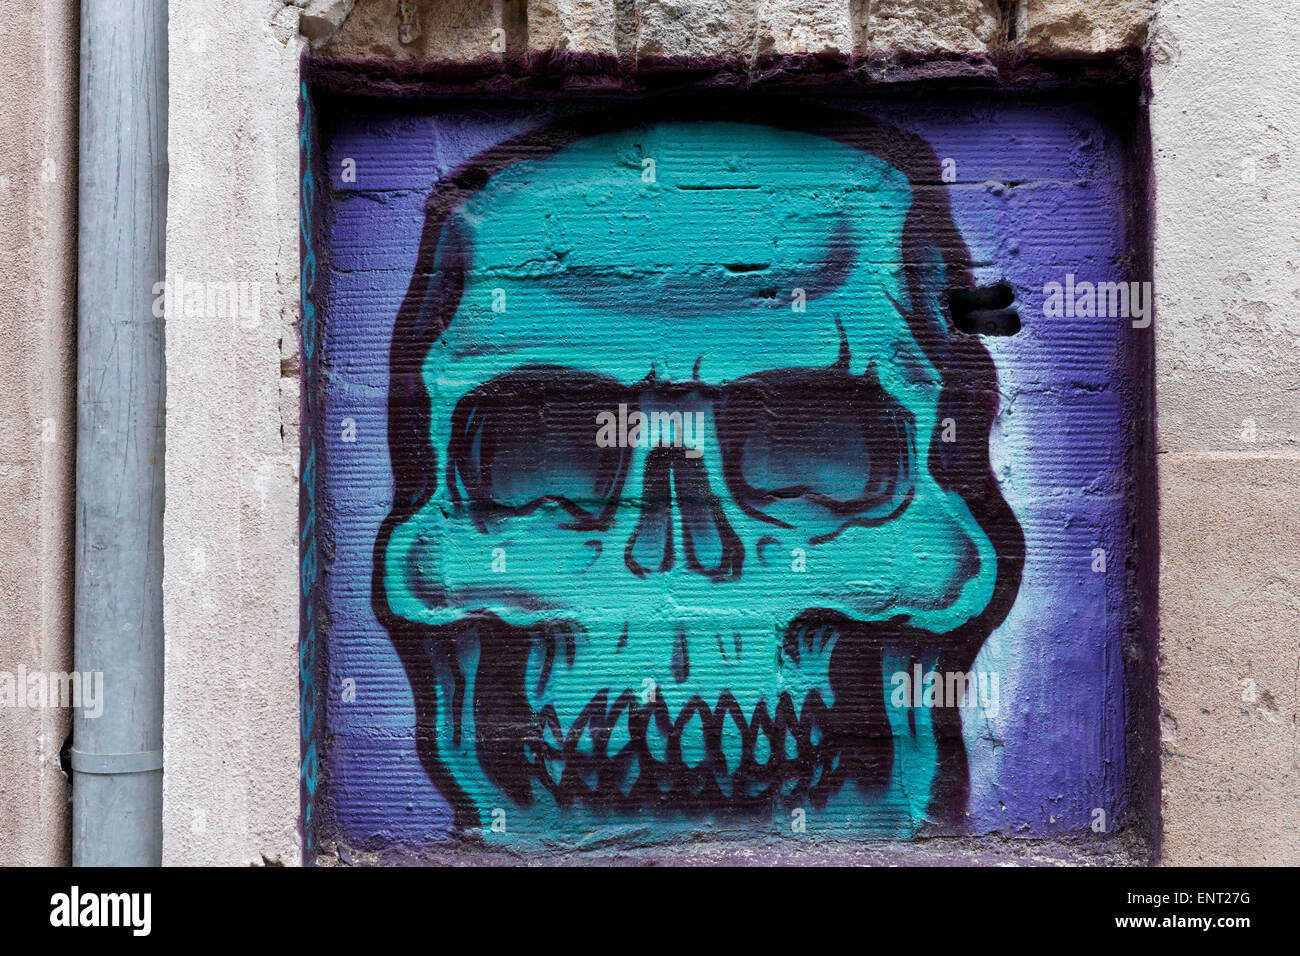 Skull, mural, street art, Palma de Majorca, Majorca, Balearic Islands, Spain Stock Photo